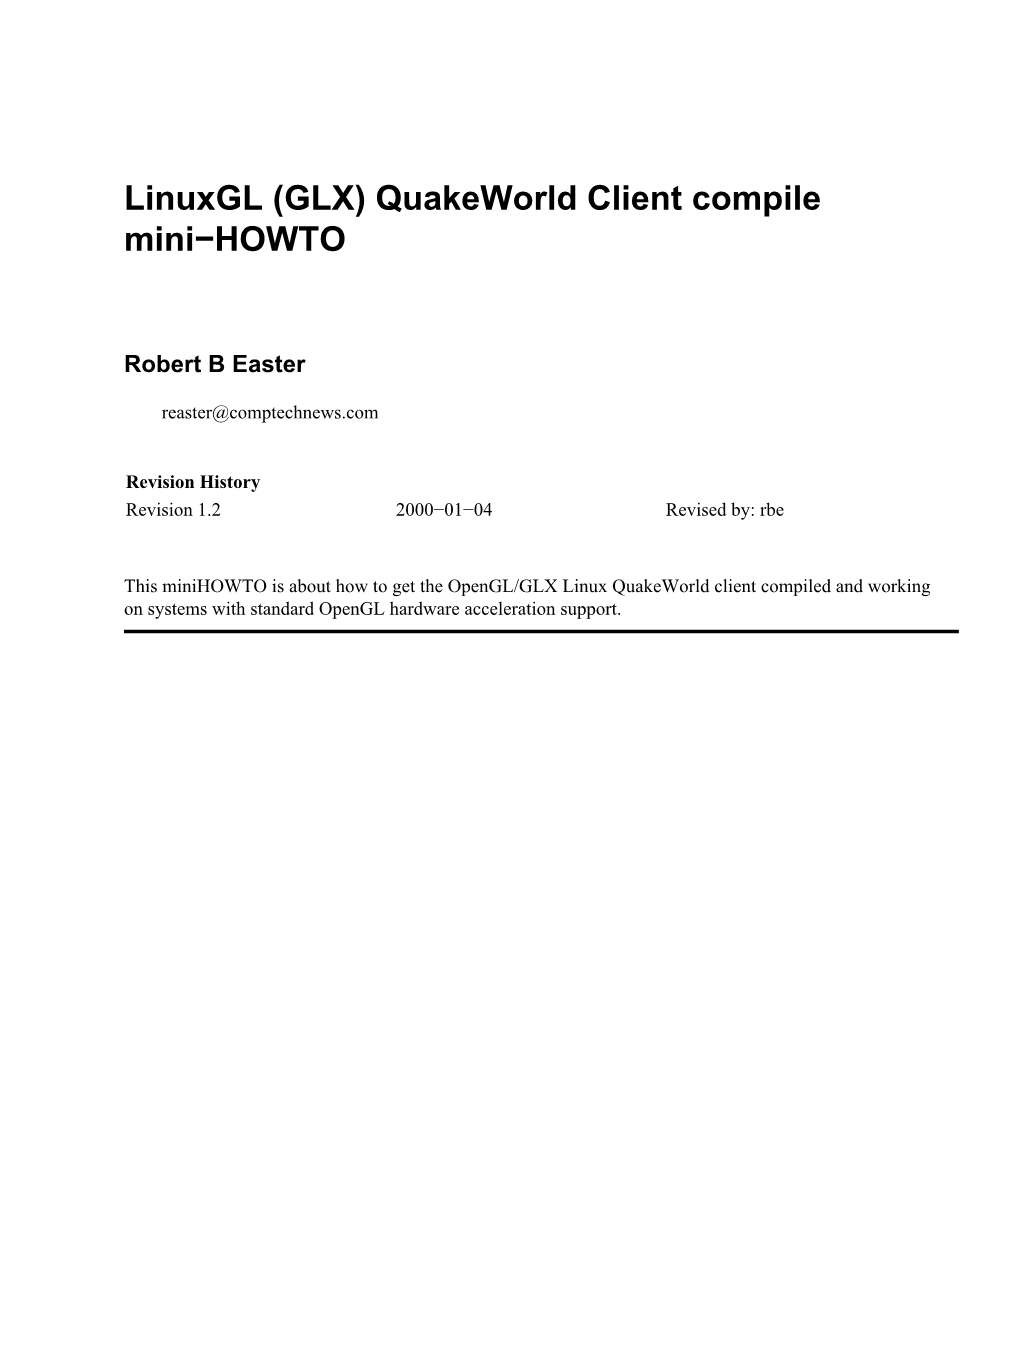 Quakeworld Client Compile Mini-HOWTO